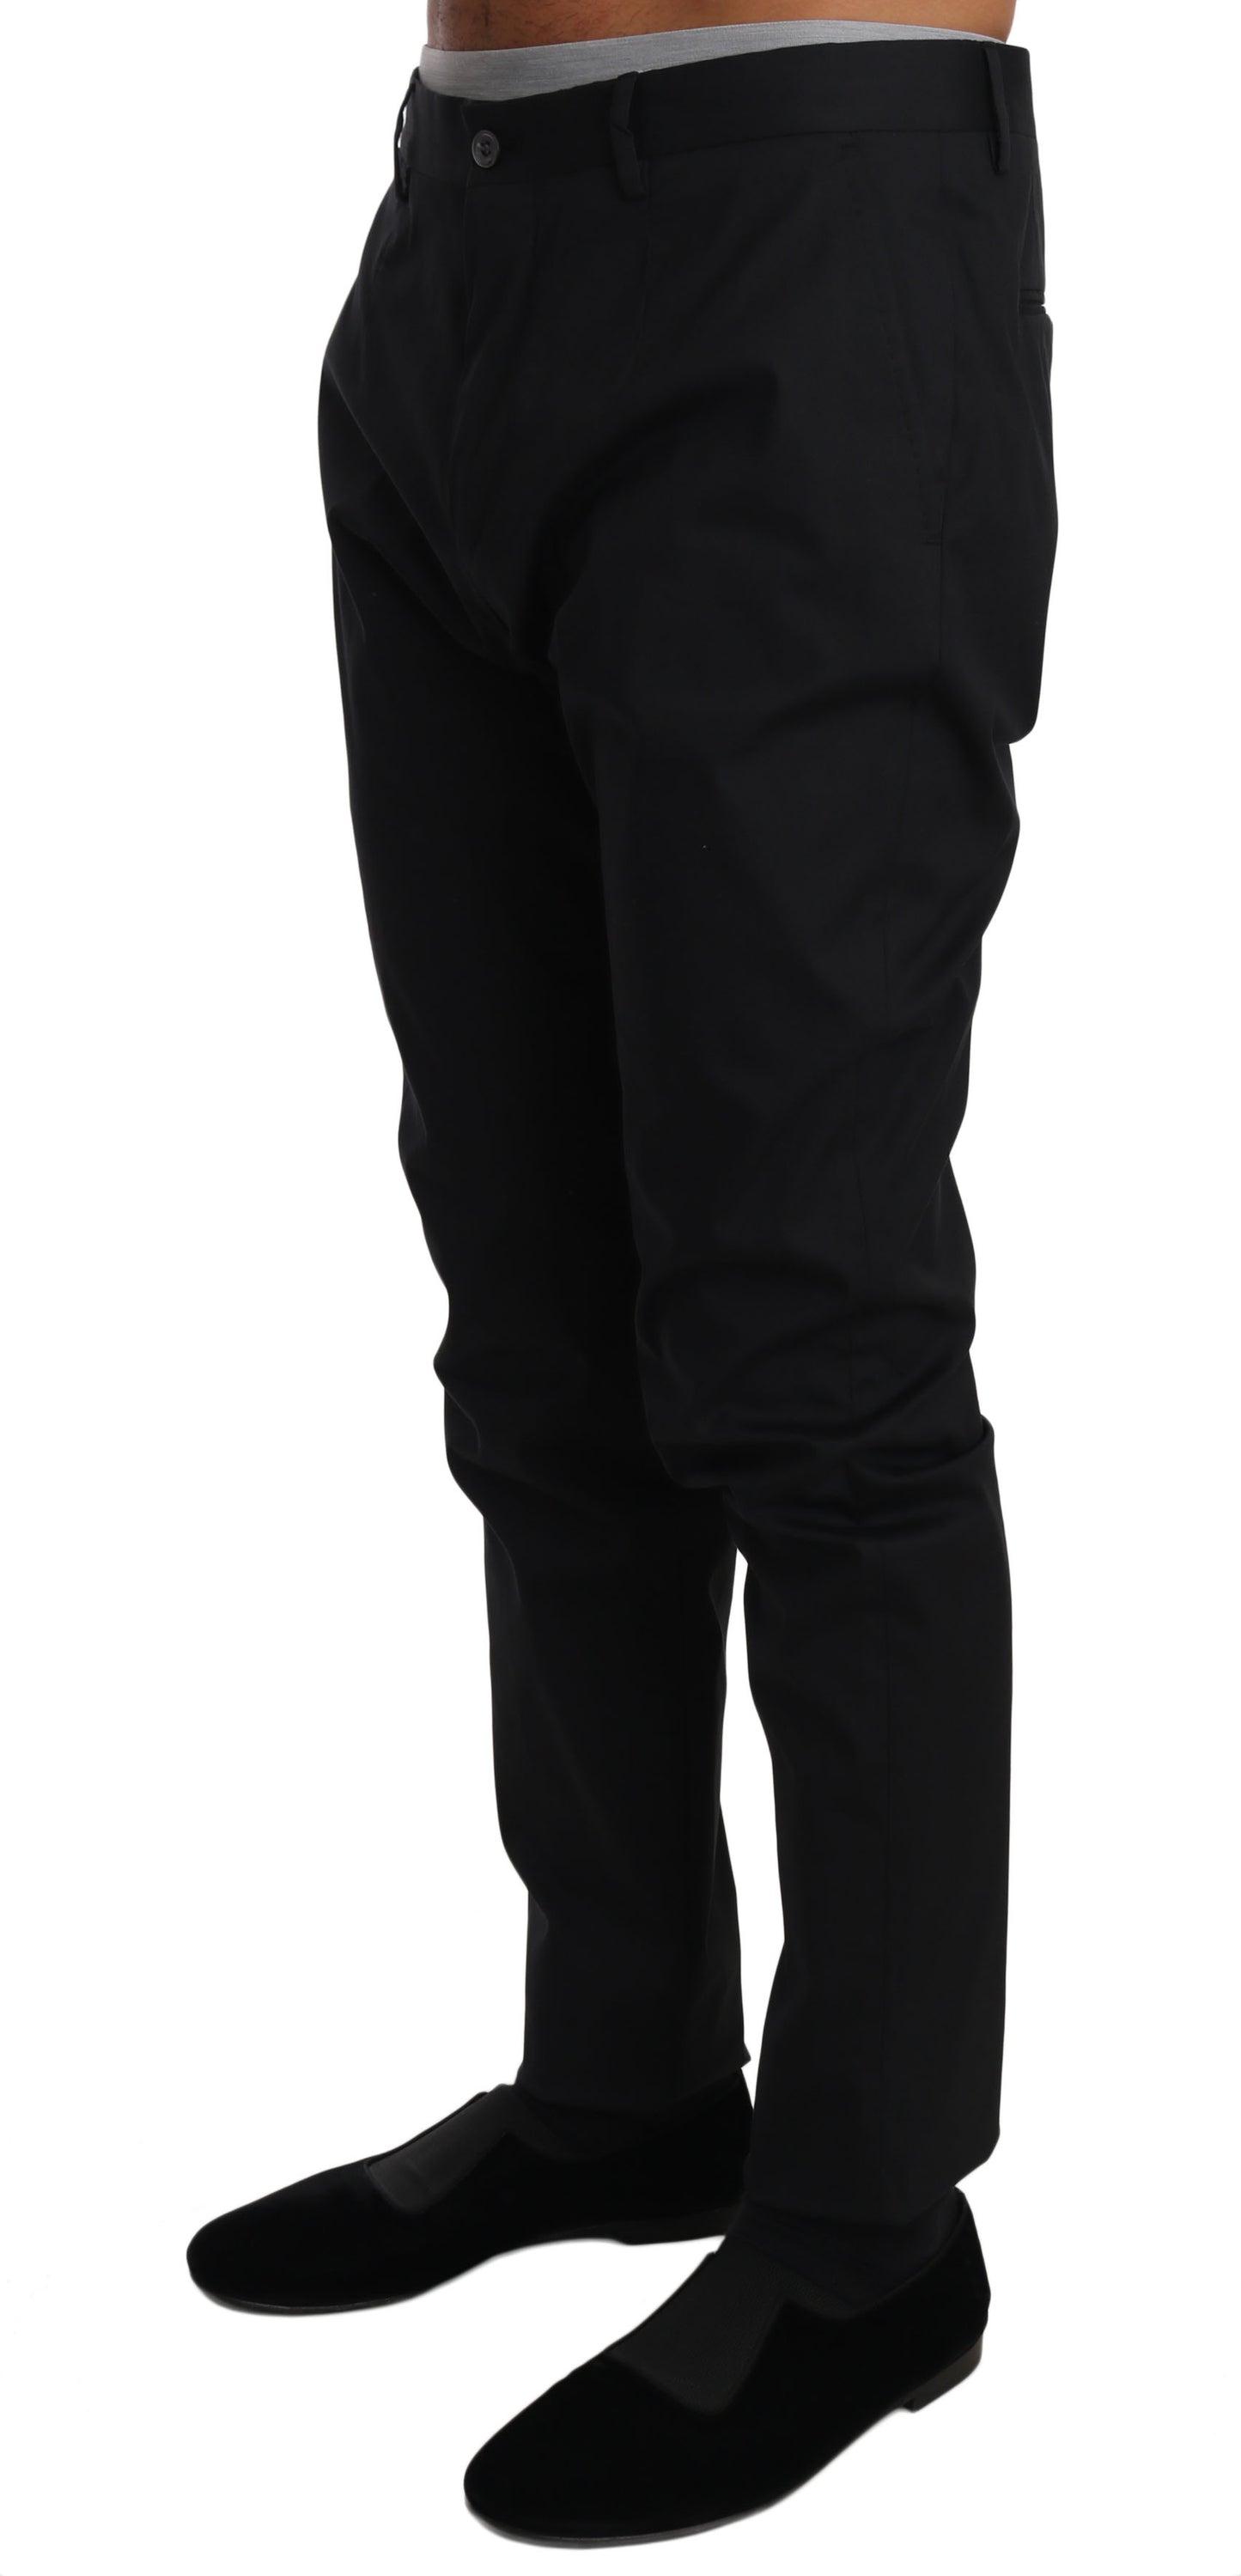 Elegant Black Formal Wool-Blend Trousers